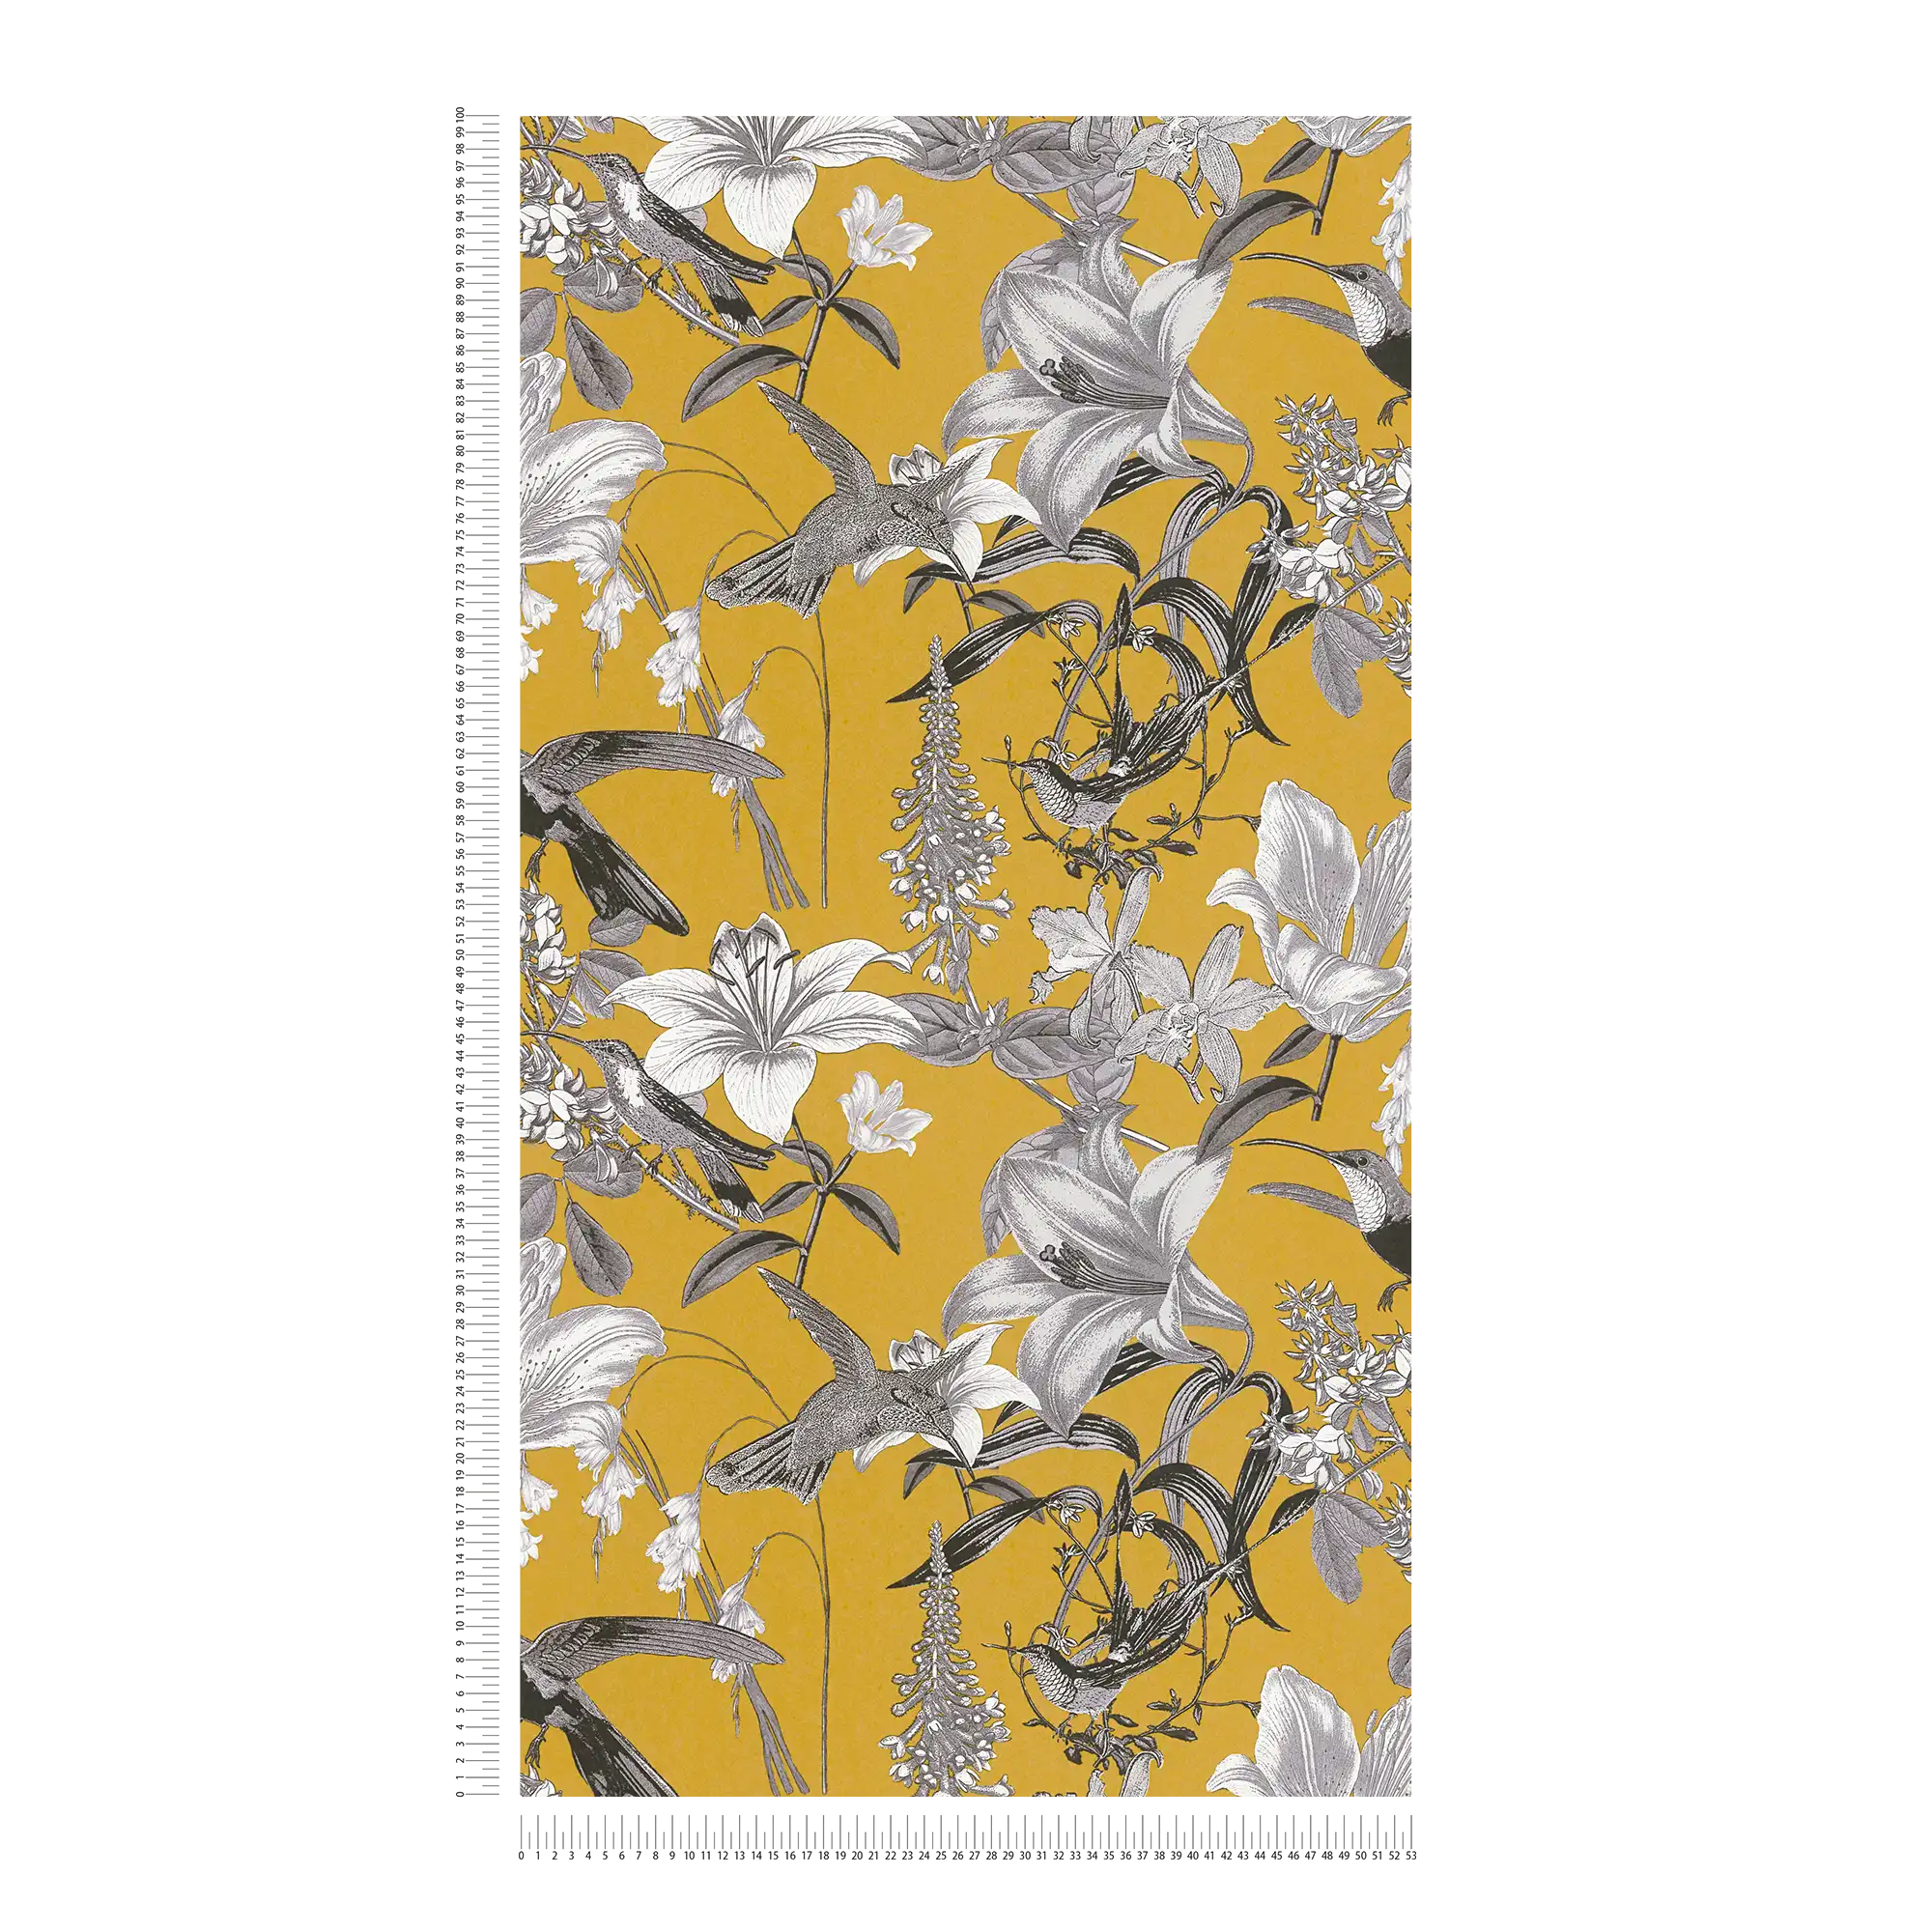             Bloemen behang mosterdgeel met bloemen & kolibrie patroon - geel, grijs, zwart
        